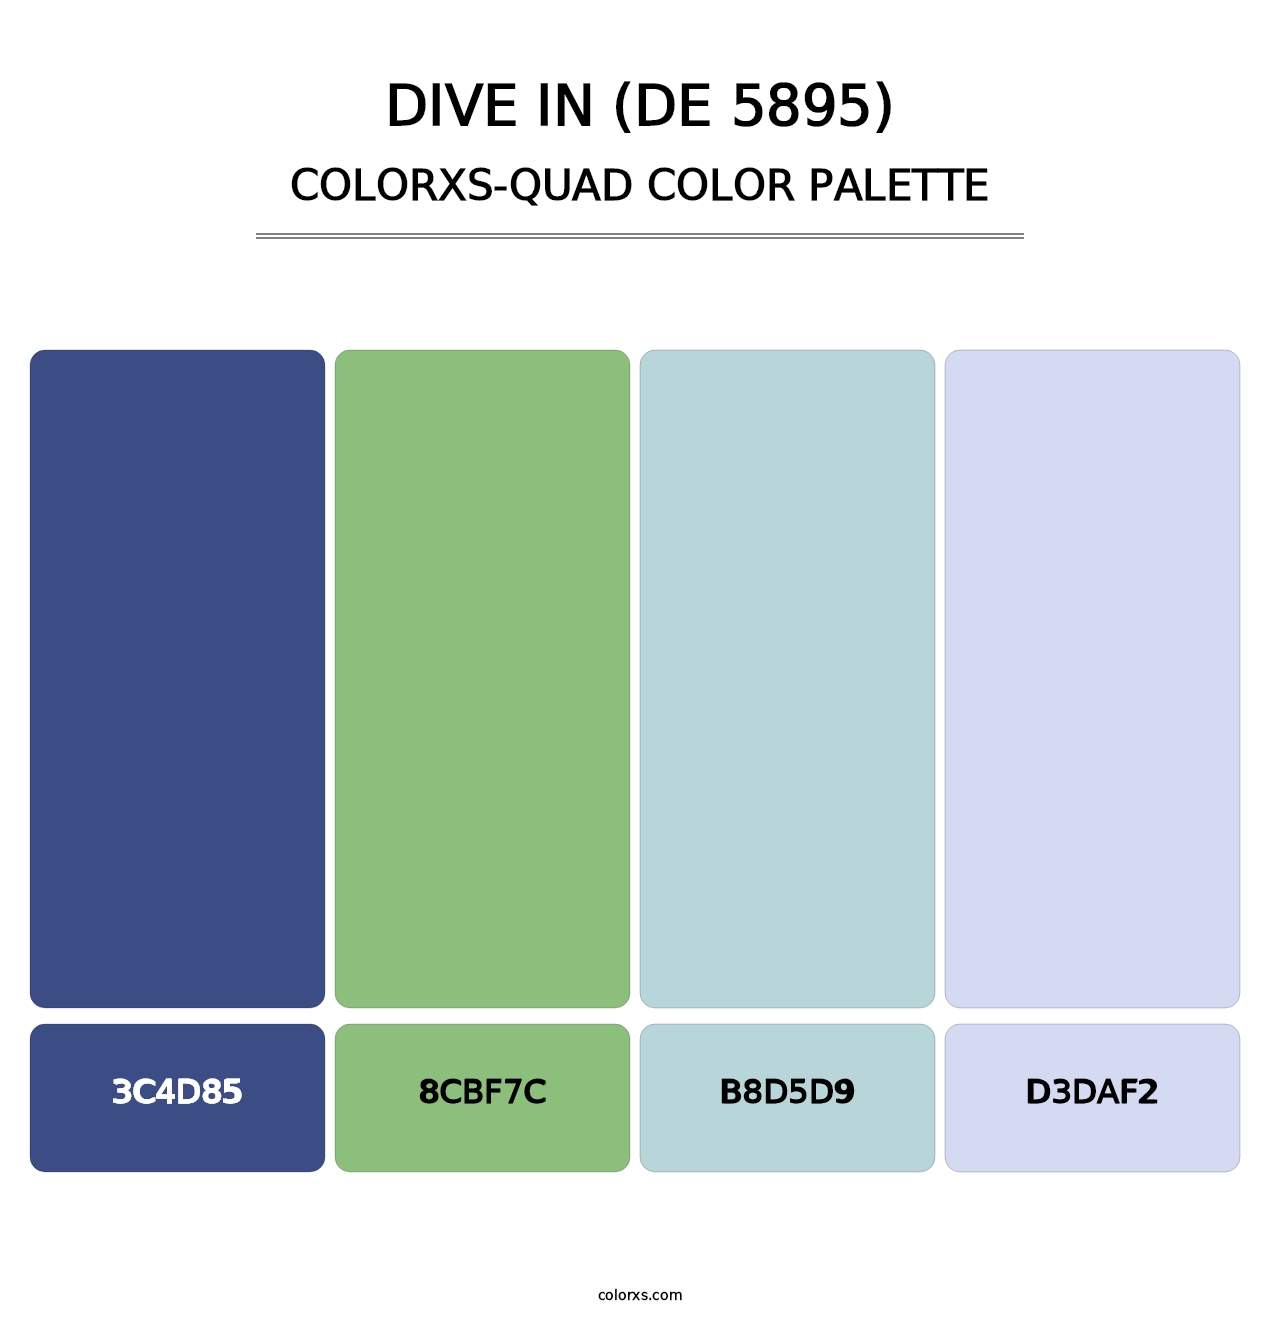 Dive In (DE 5895) - Colorxs Quad Palette